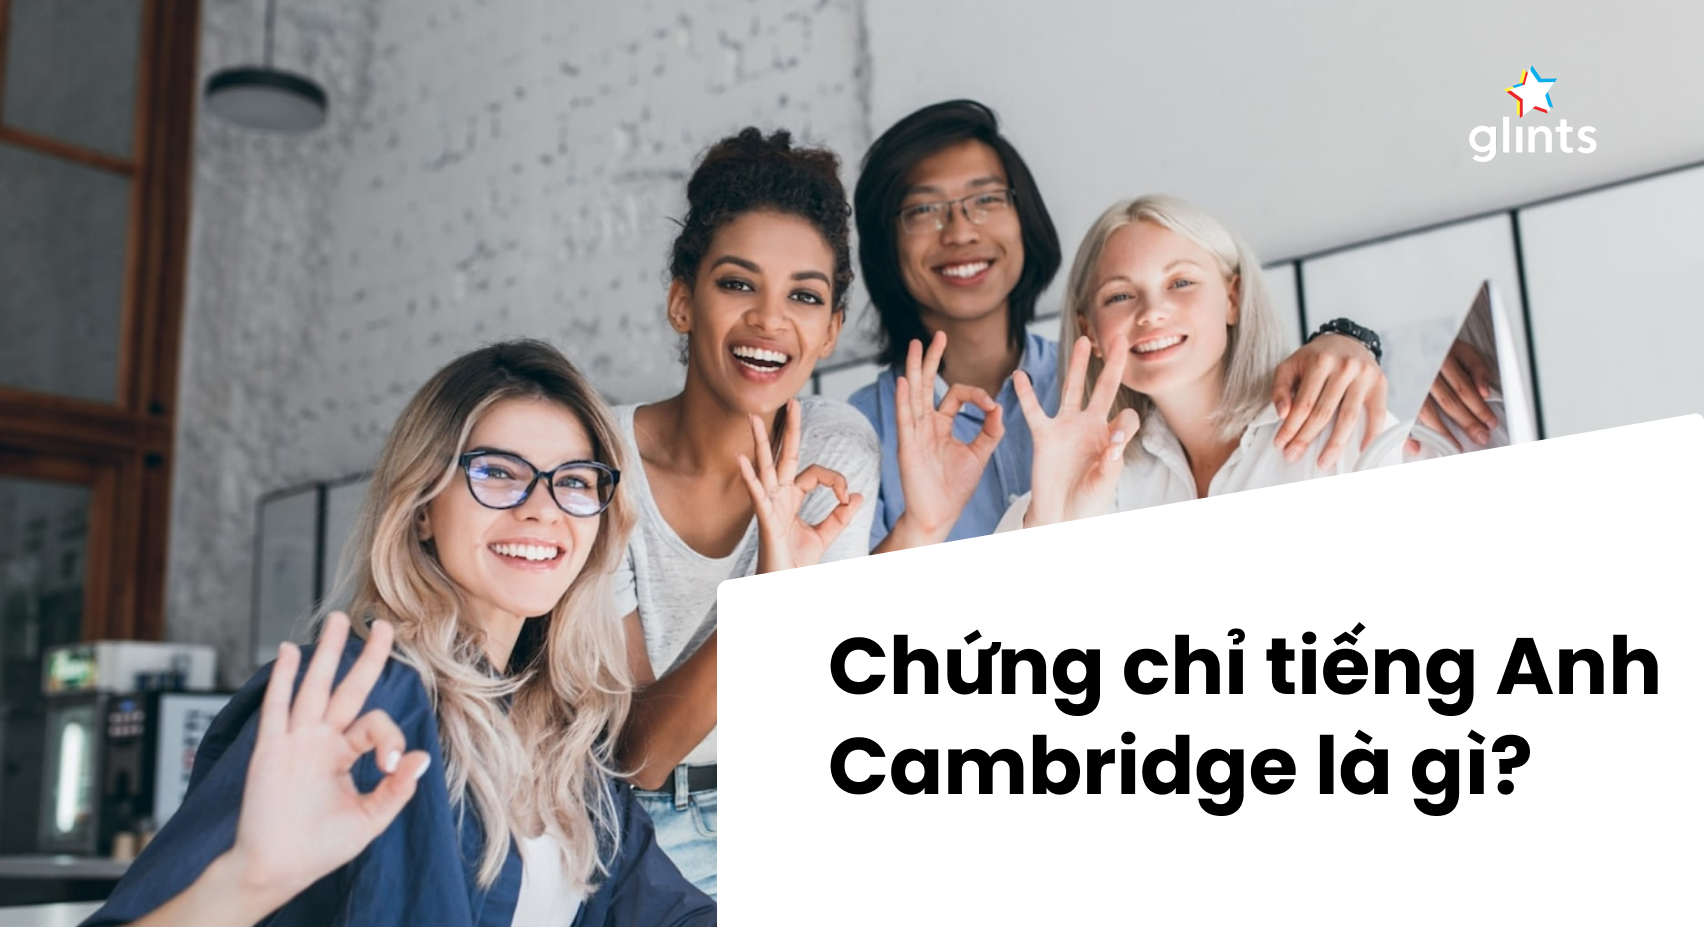 Với chứng chỉ Cambridge English, bạn sẽ có cơ hội được giao tiếp với người nước ngoài một cách tự tin và chuyên nghiệp hơn. Ngoài ra, chứng chỉ này còn giúp bạn tăng khả năng tìm kiếm việc làm và phát triển sự nghiệp. Hãy đến với chúng tôi để có cơ hội sở hữu chứng chỉ Cambridge English nhanh chóng và dễ dàng!